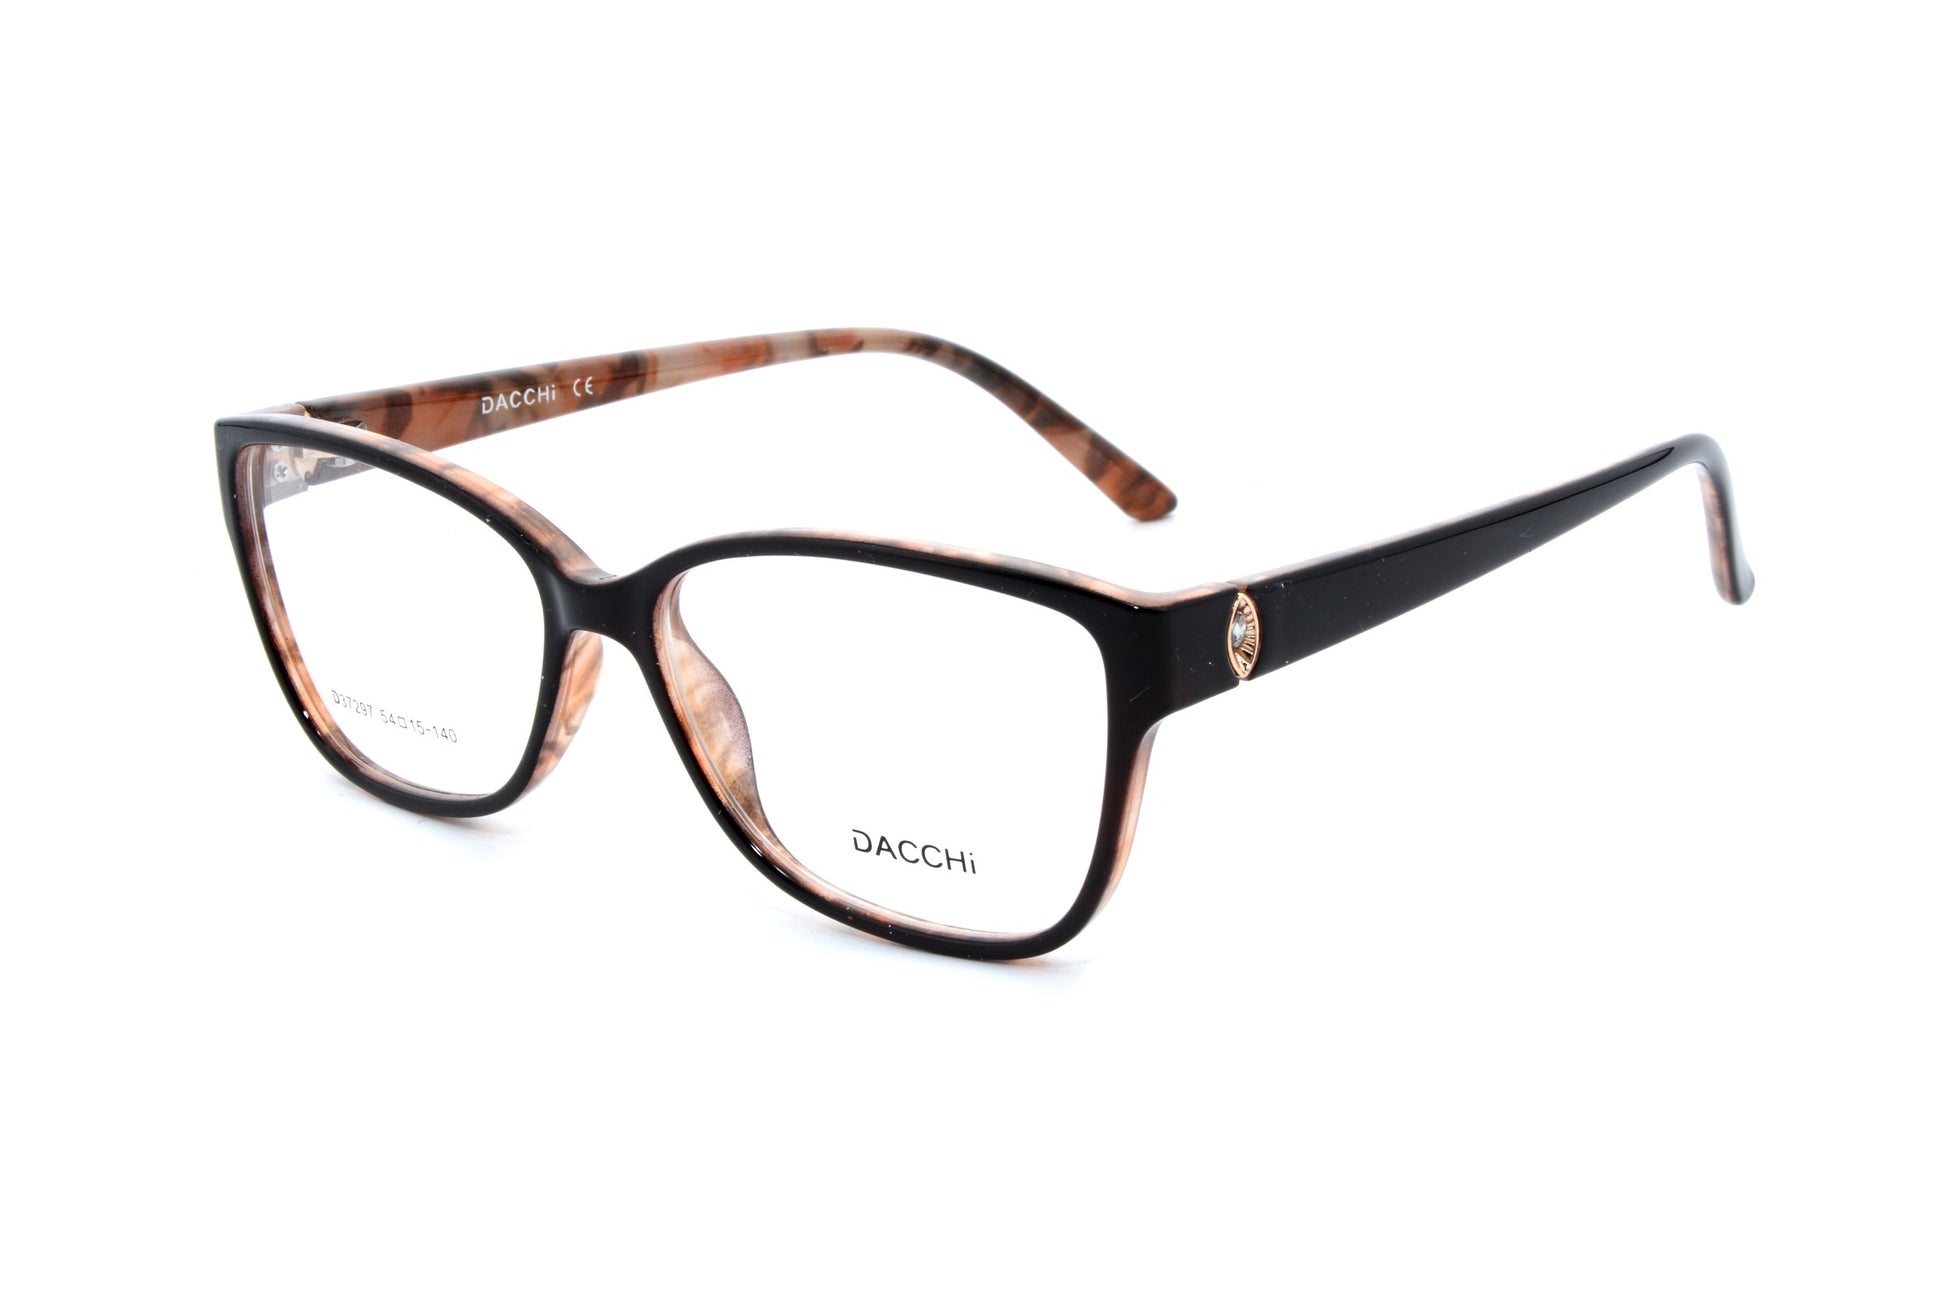 Dacchi eyewear 37297, C2 - Optics Trading